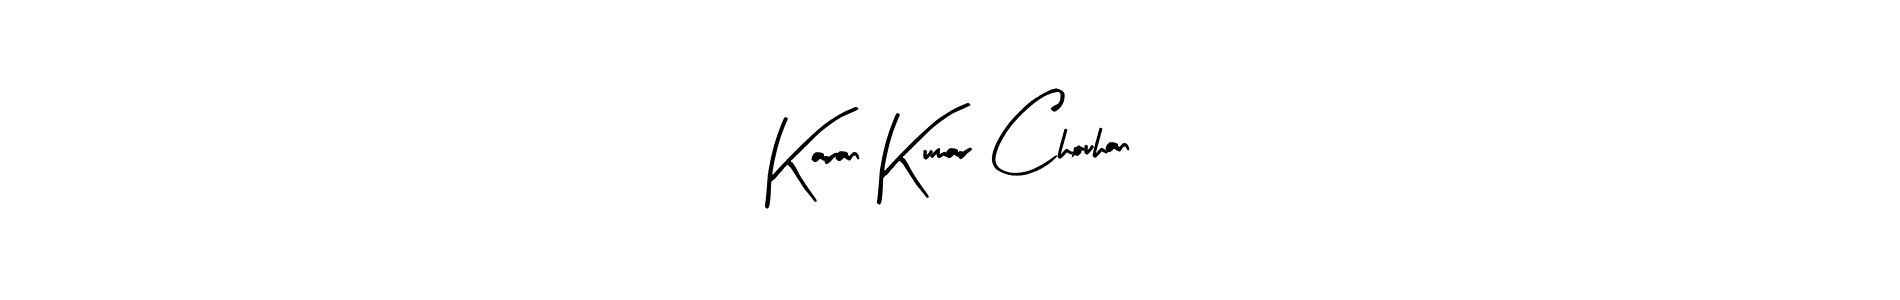 How to Draw Karan Kumar Chouhan signature style? Arty Signature is a latest design signature styles for name Karan Kumar Chouhan. Karan Kumar Chouhan signature style 8 images and pictures png